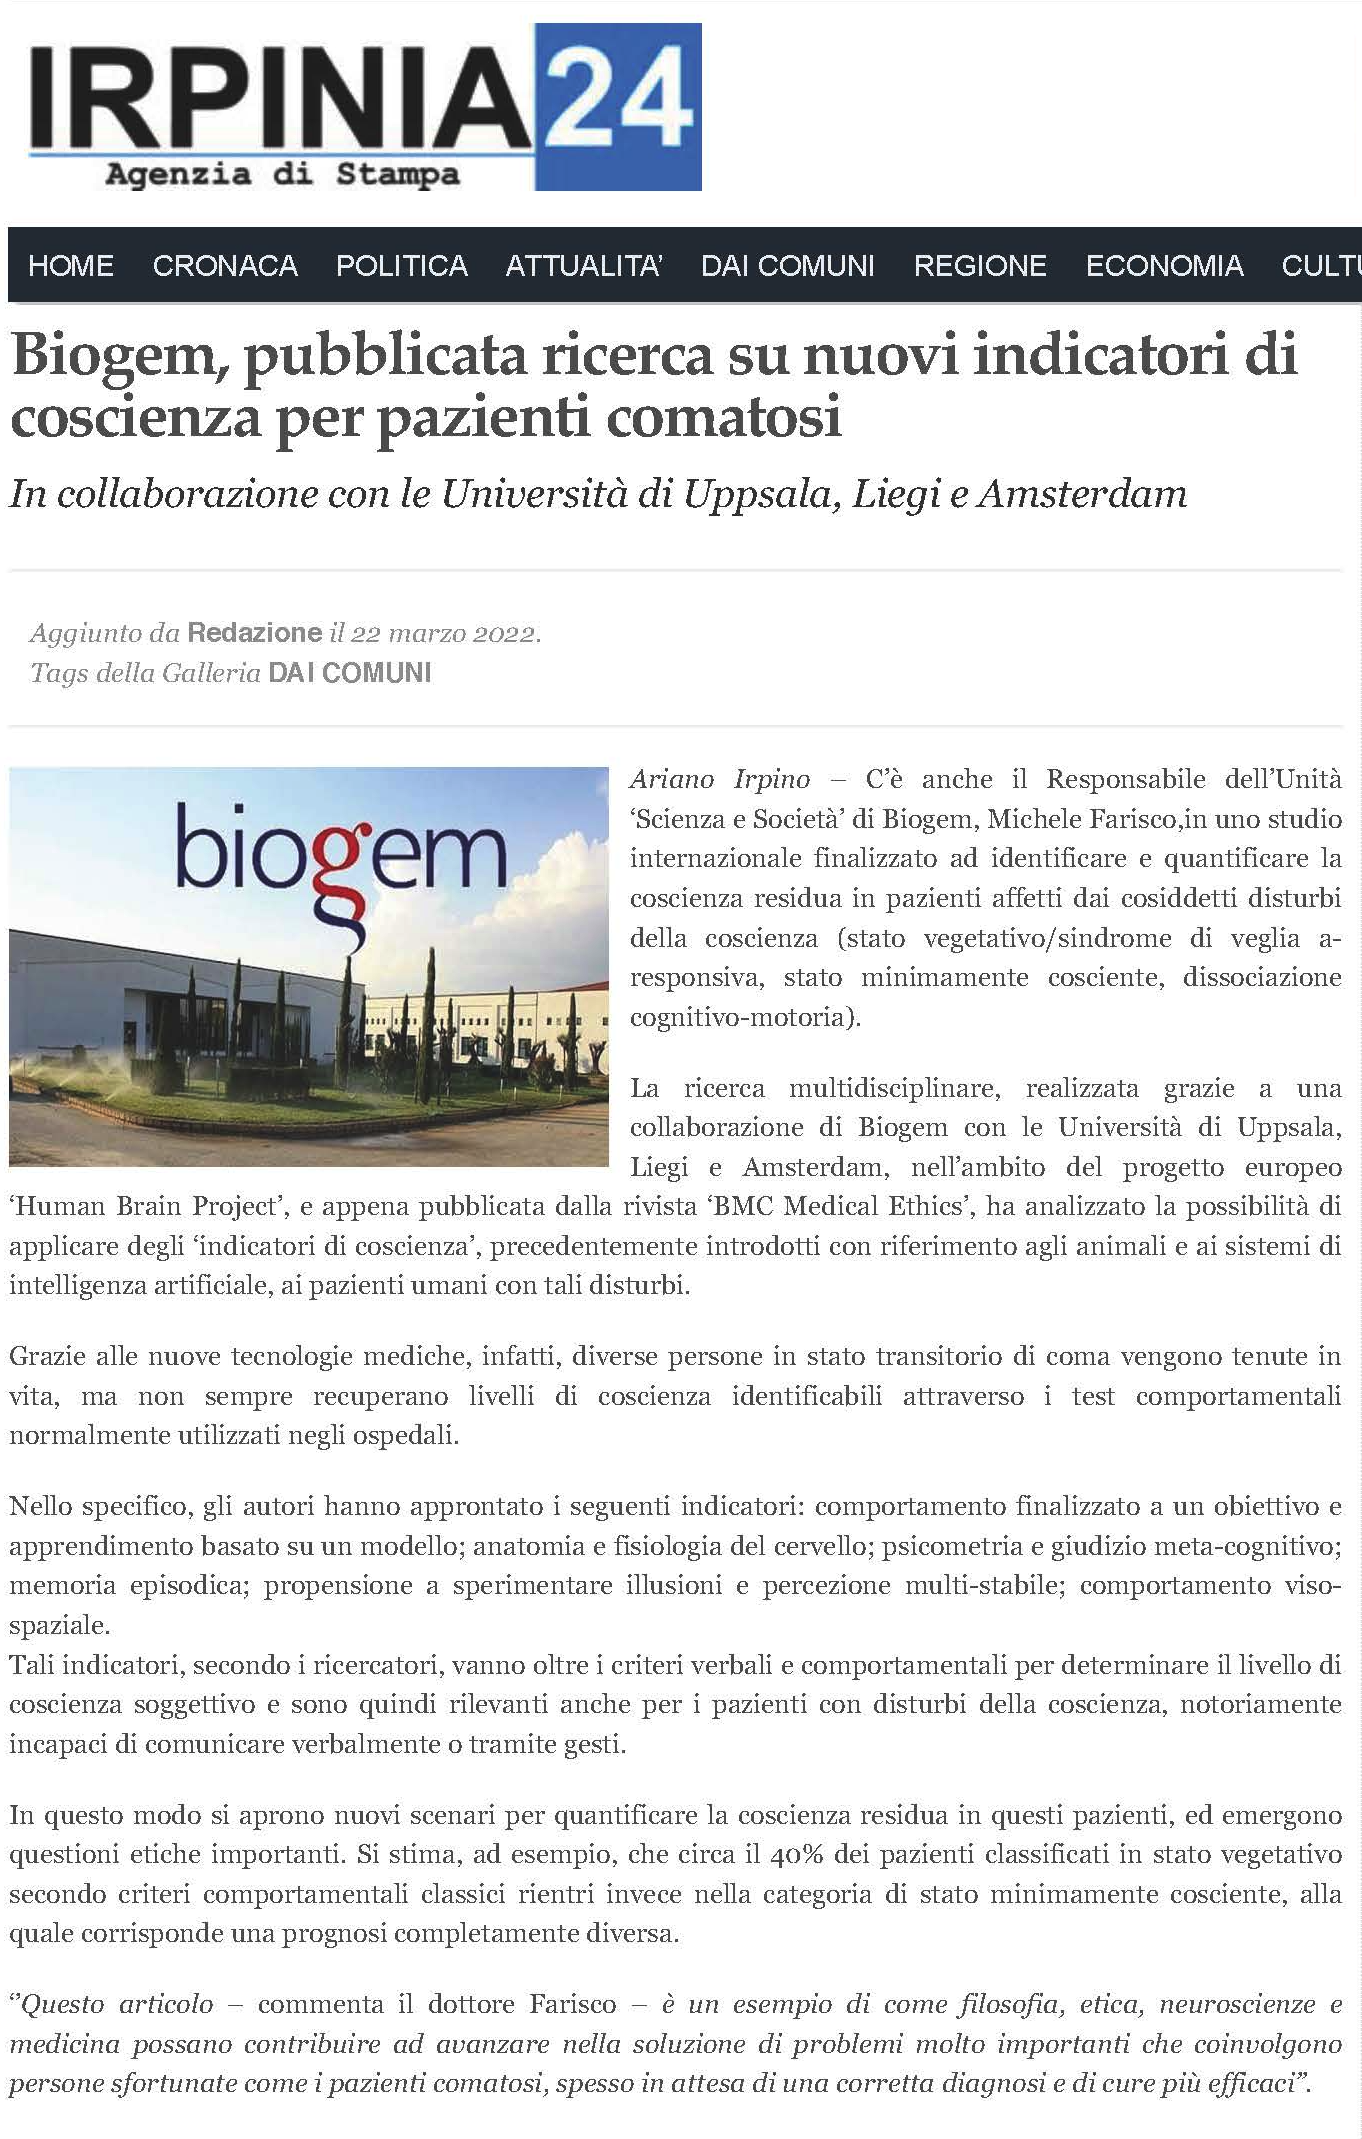 Biogem, pubblicata ricerca su nuovi indicatori di coscienza per pazienti comatosi